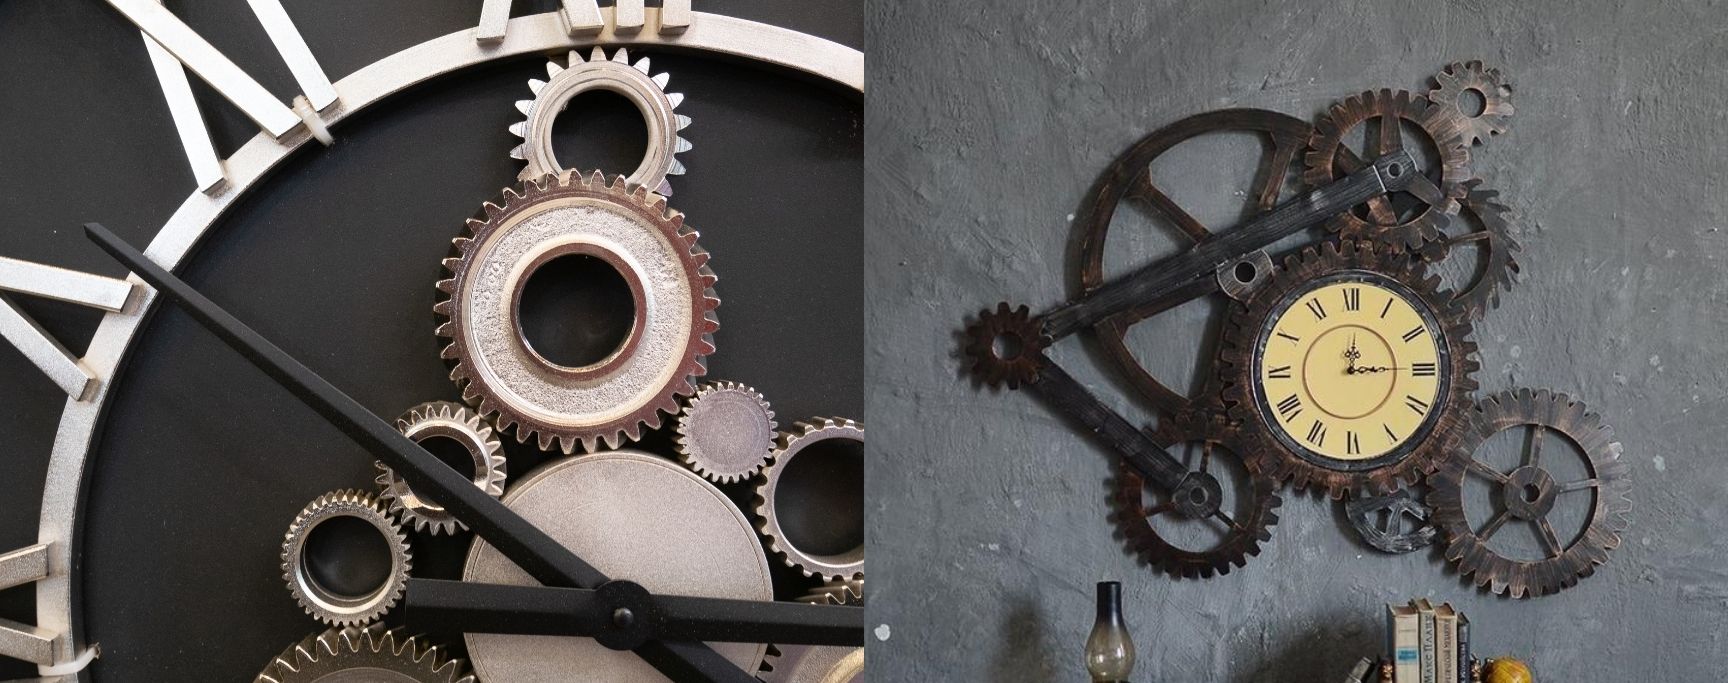 horloge steampunk métal